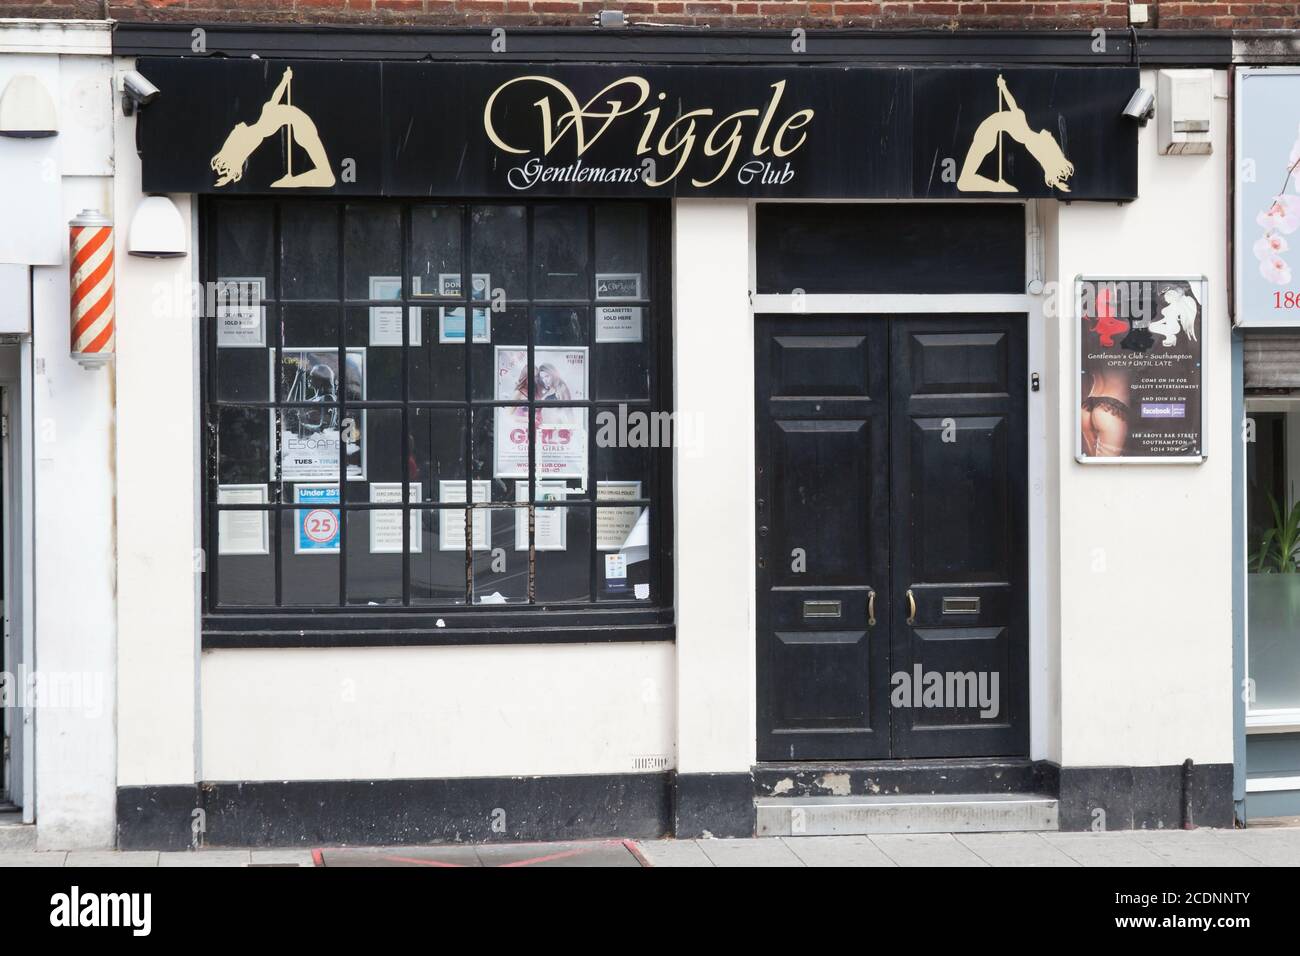 Wiggle Gentlemen's Club à Southampton, Hampshire au Royaume-Uni, prise le 10 juillet 2020 Banque D'Images